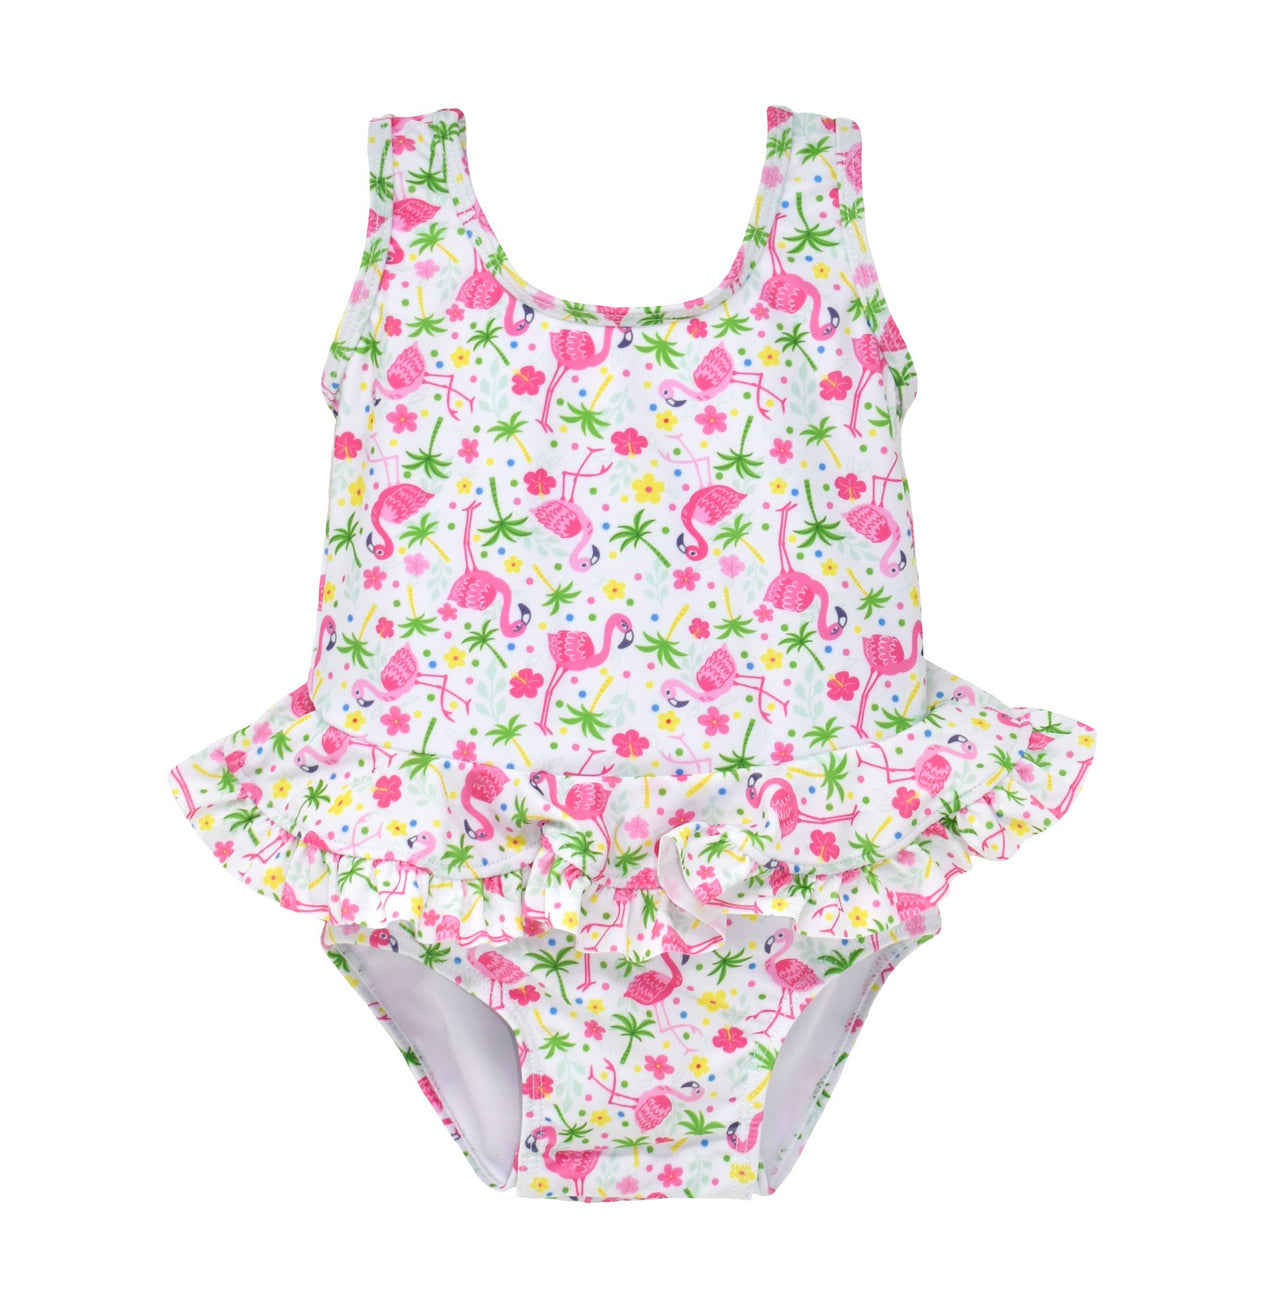 Flap Happy Flamingo Party UPF 50 Stella Infant Ruffle Swimsuit 5012